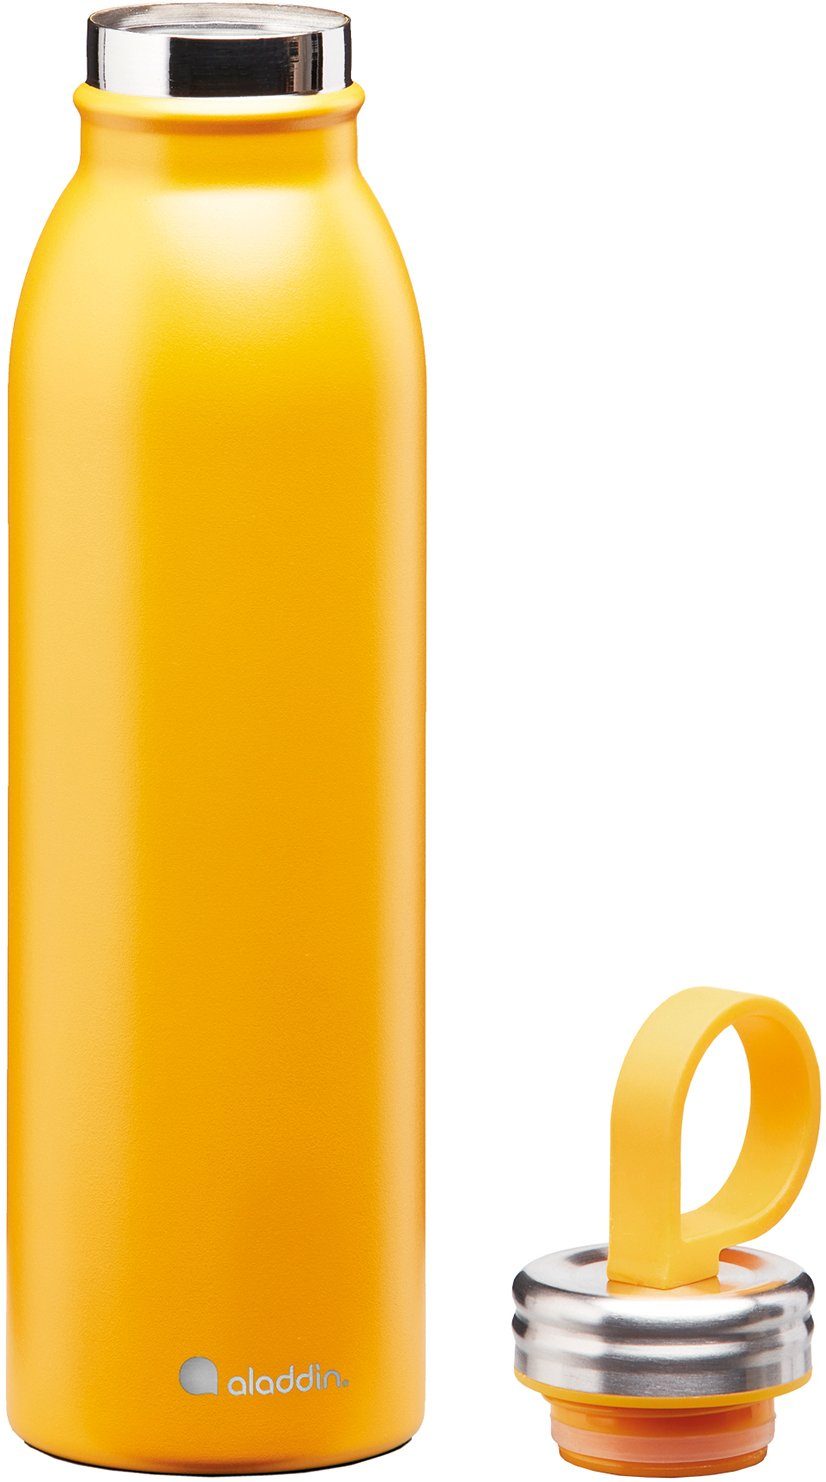 Trendfarben, Chilled Isolierflasche aladdin auslaufsicher, Edeltahl 0,55 gelb in Thermavac, ml